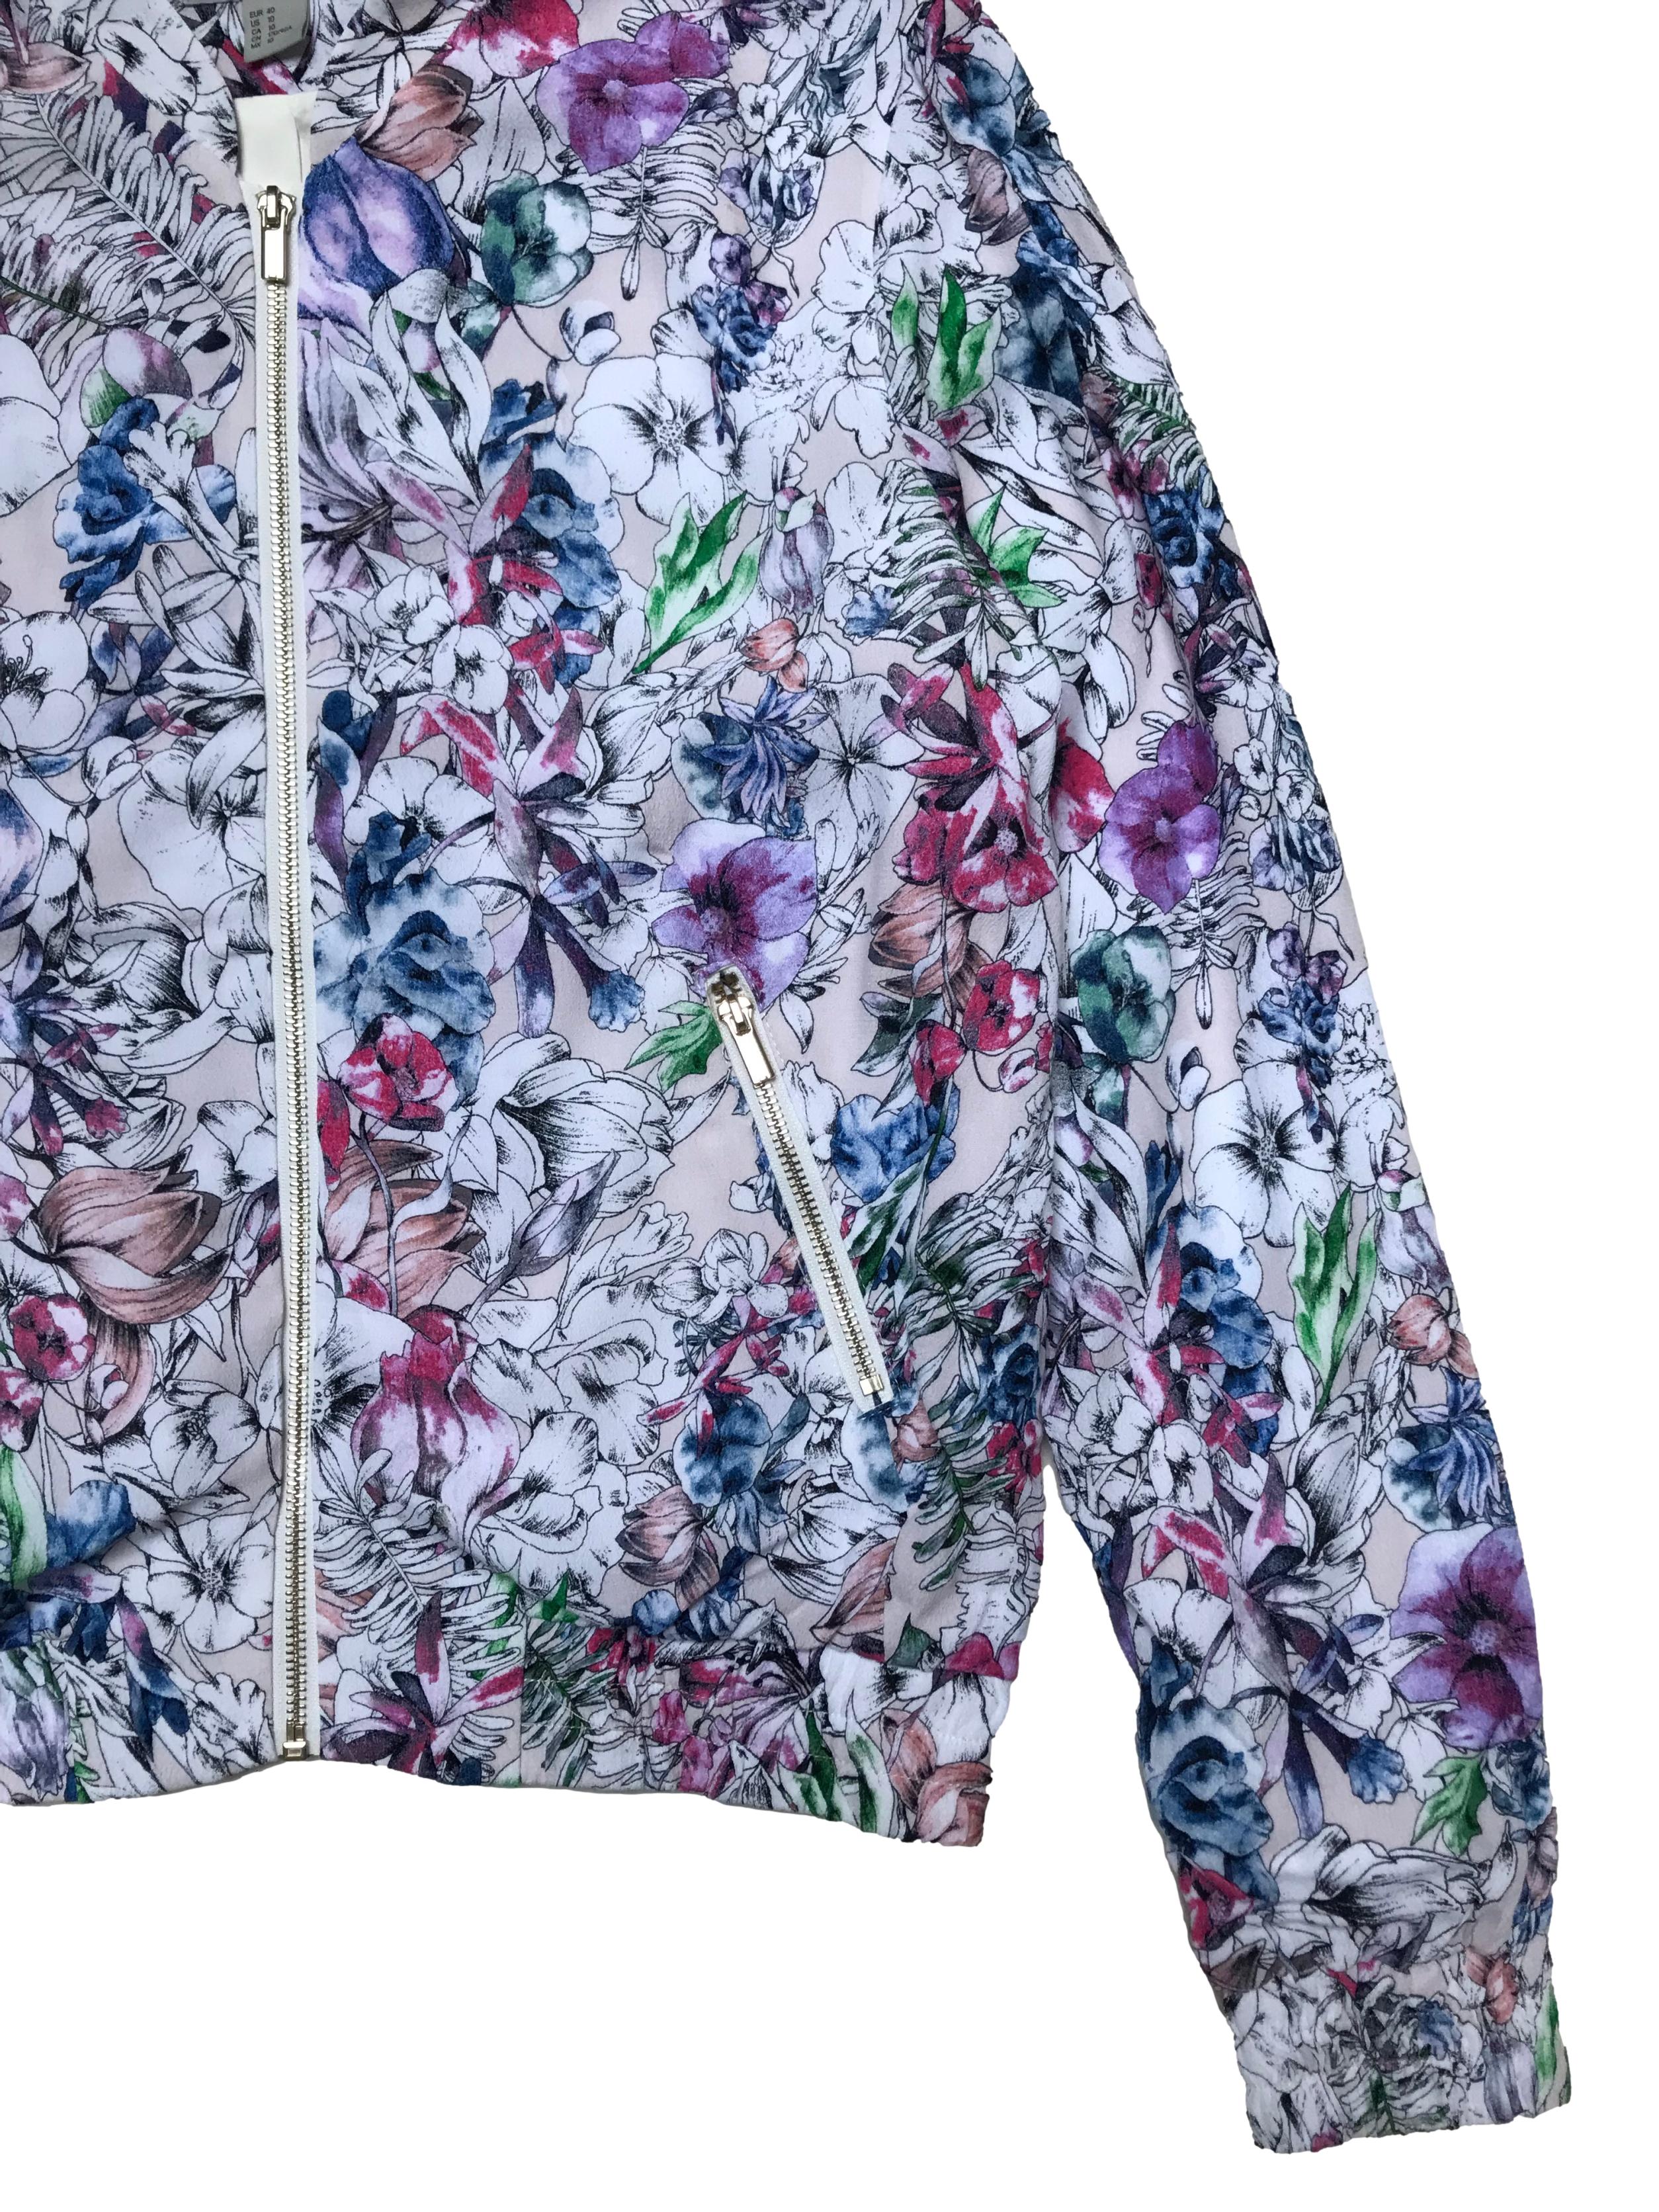 Casaca H&M estilo bomber jacket, blanca con estampado de flores, tiene forro, cierres delanteros y pretina en puños y basta.  Ancho 110cm Largo 57cm. Nueva. Precio original S/ 199